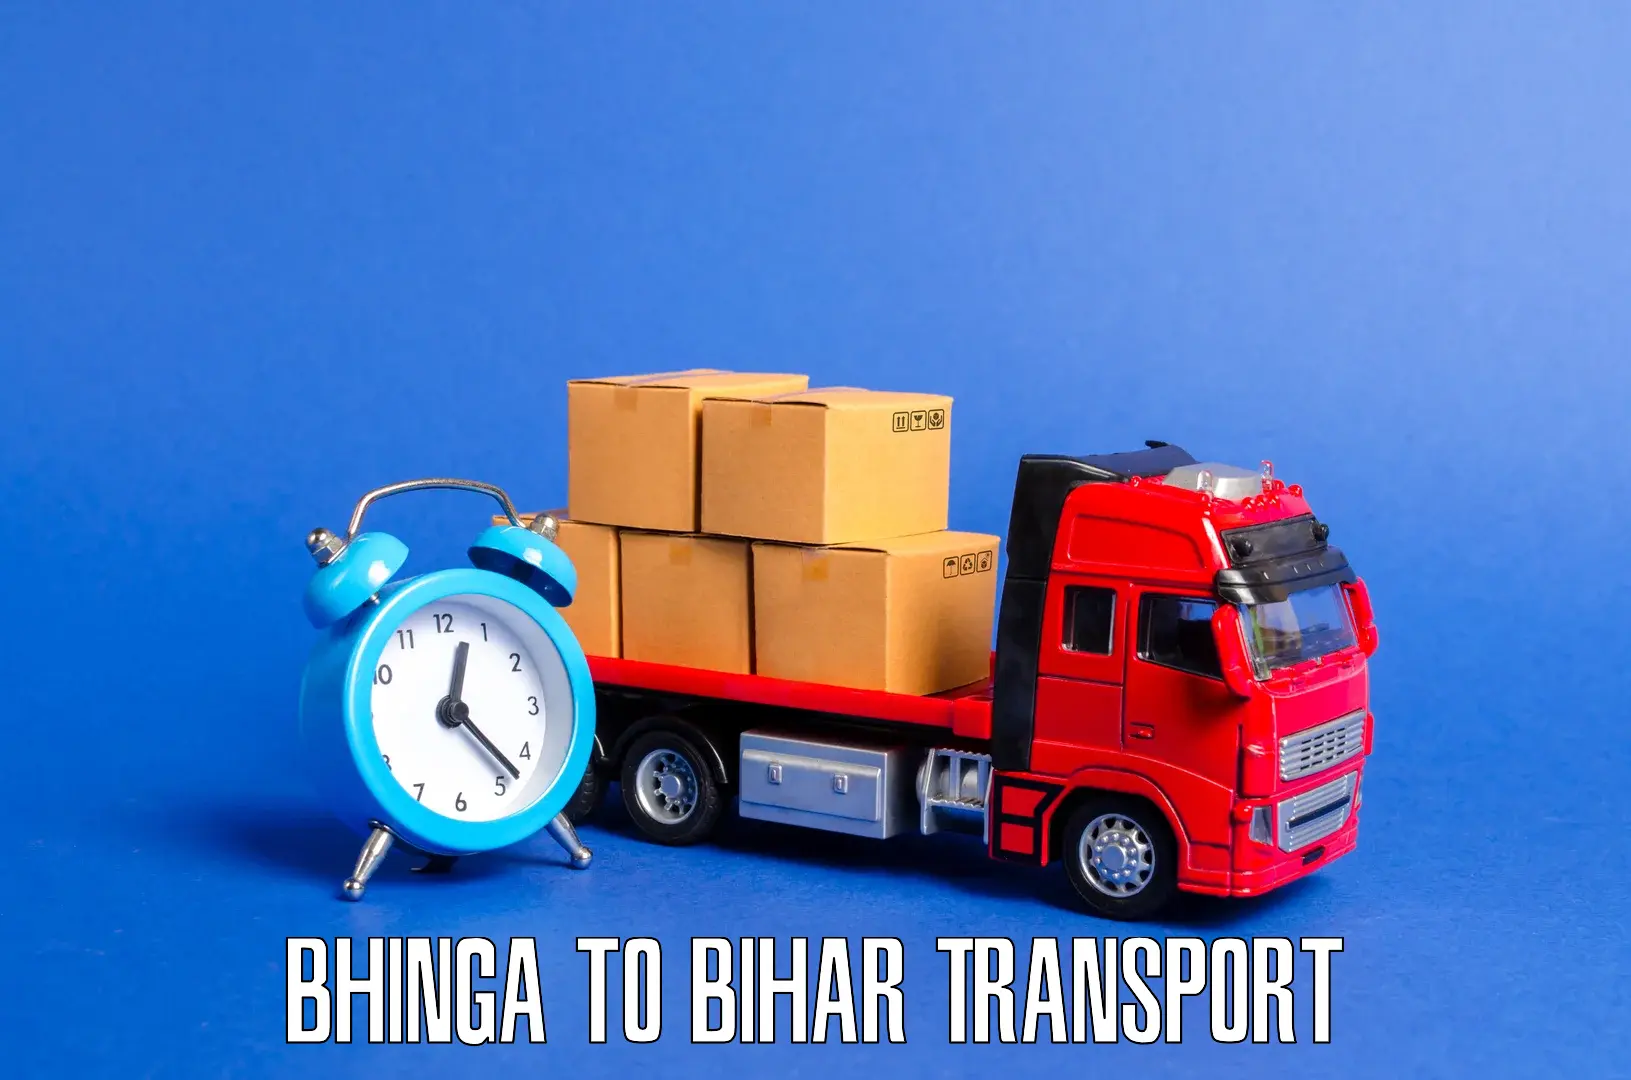 Sending bike to another city Bhinga to Danapur